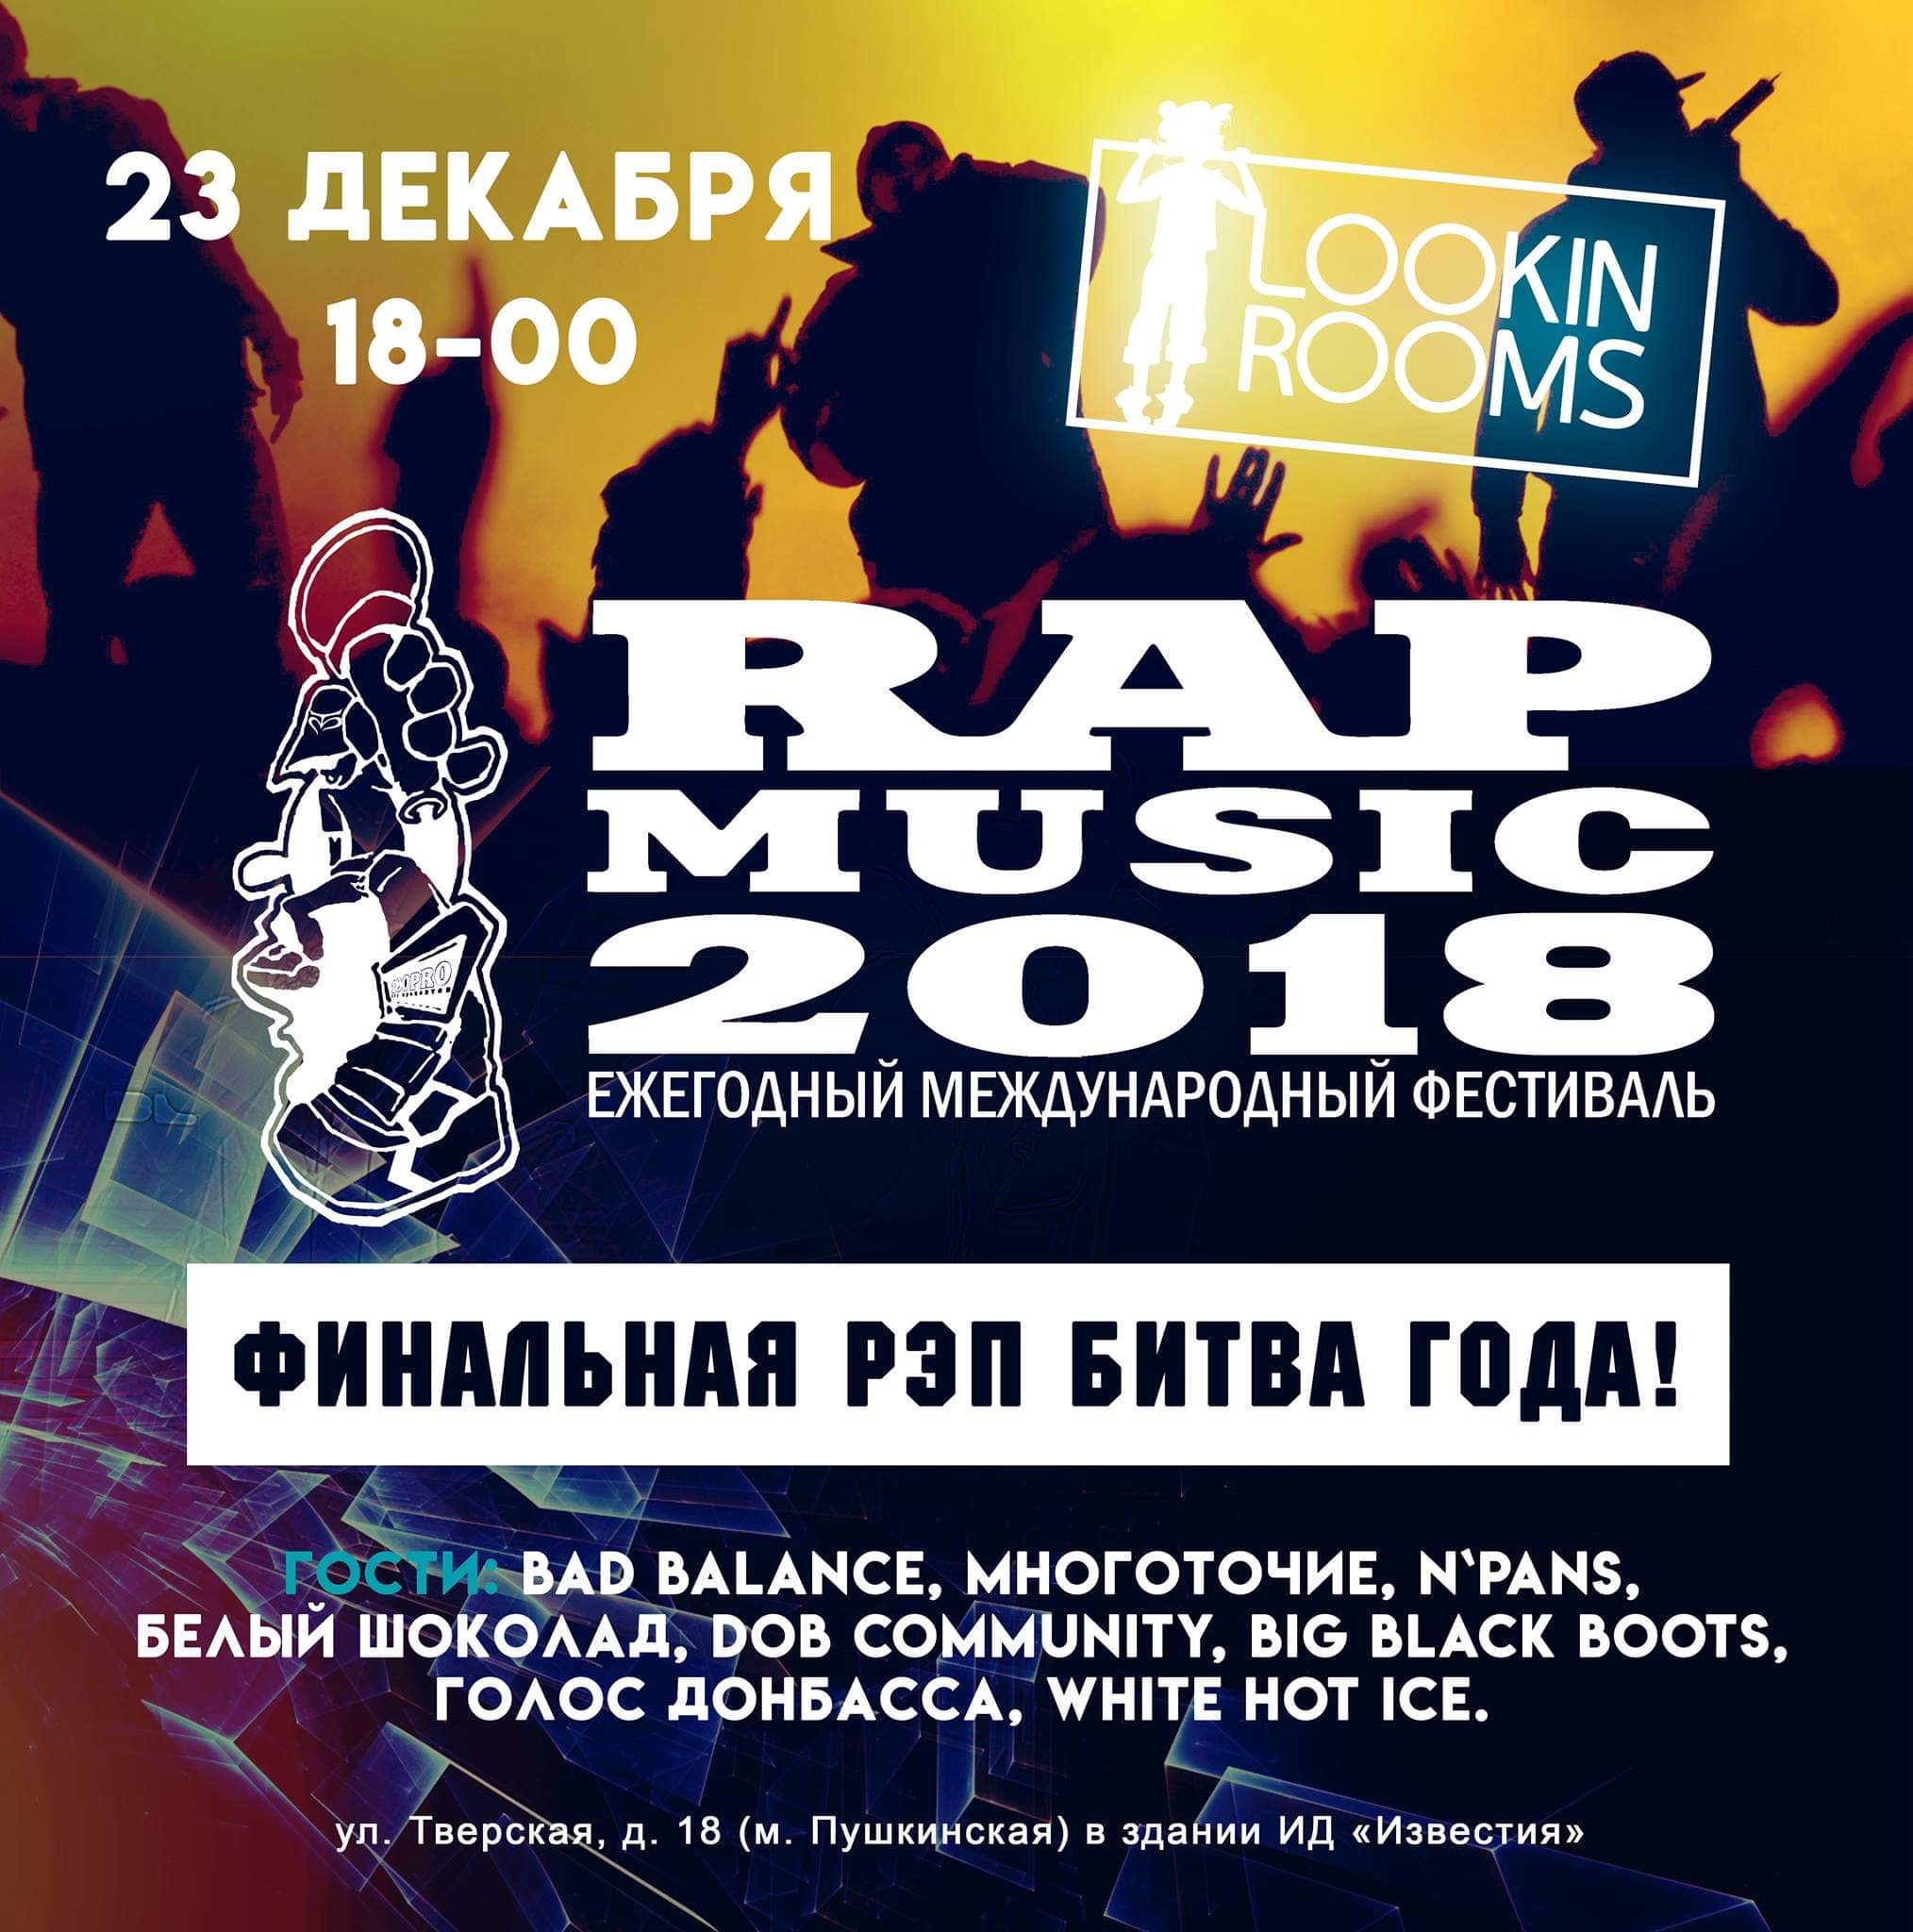 23 декабря состоится очередной ежегодный международный фестиваль RAP MUSIC 2018